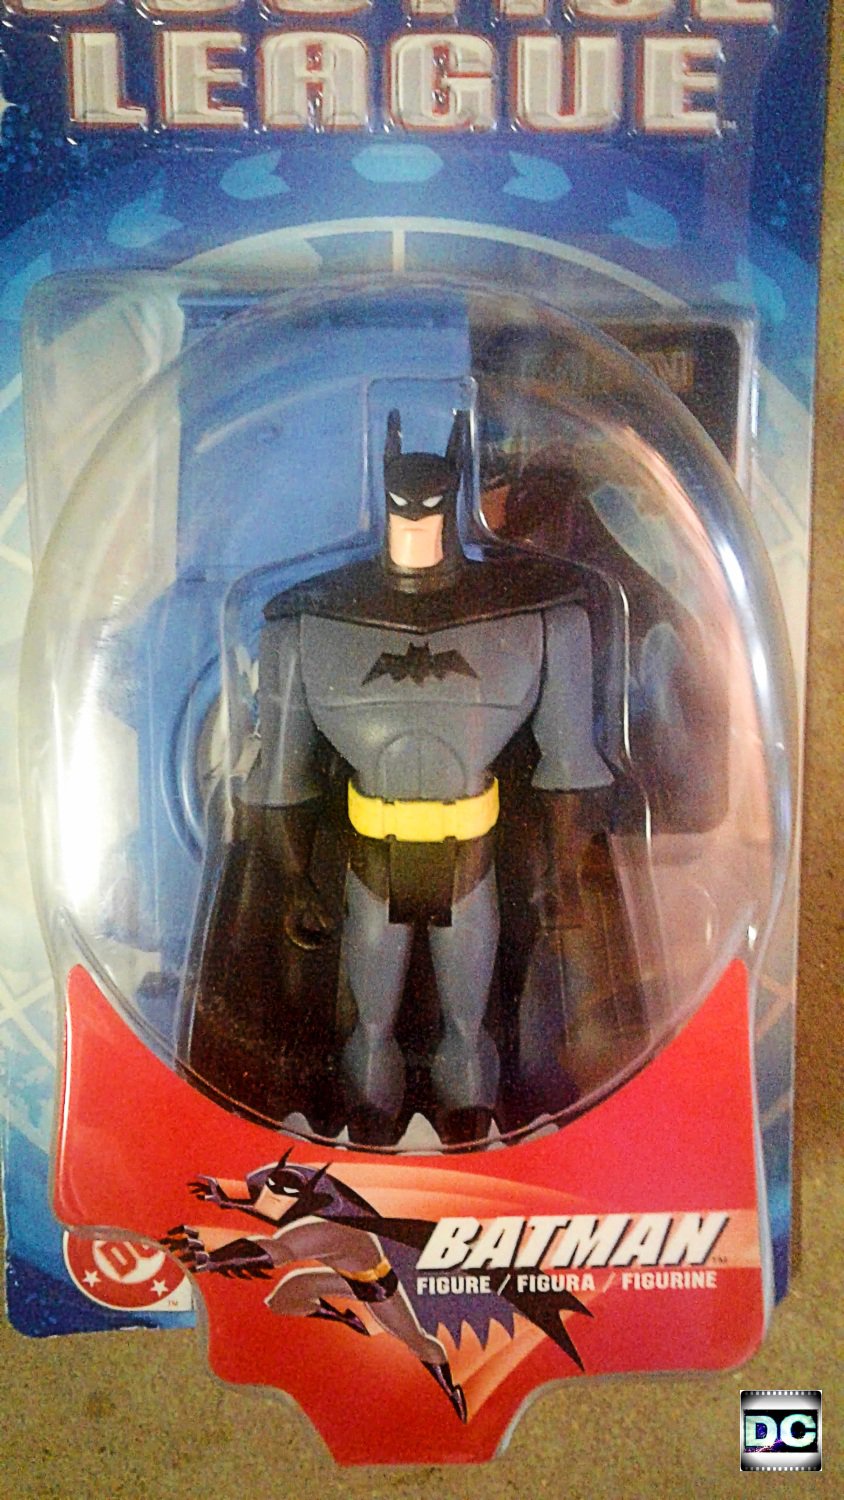 2003 Justice League Batman Series 1 Action Figure 4.75 Mattel B4423